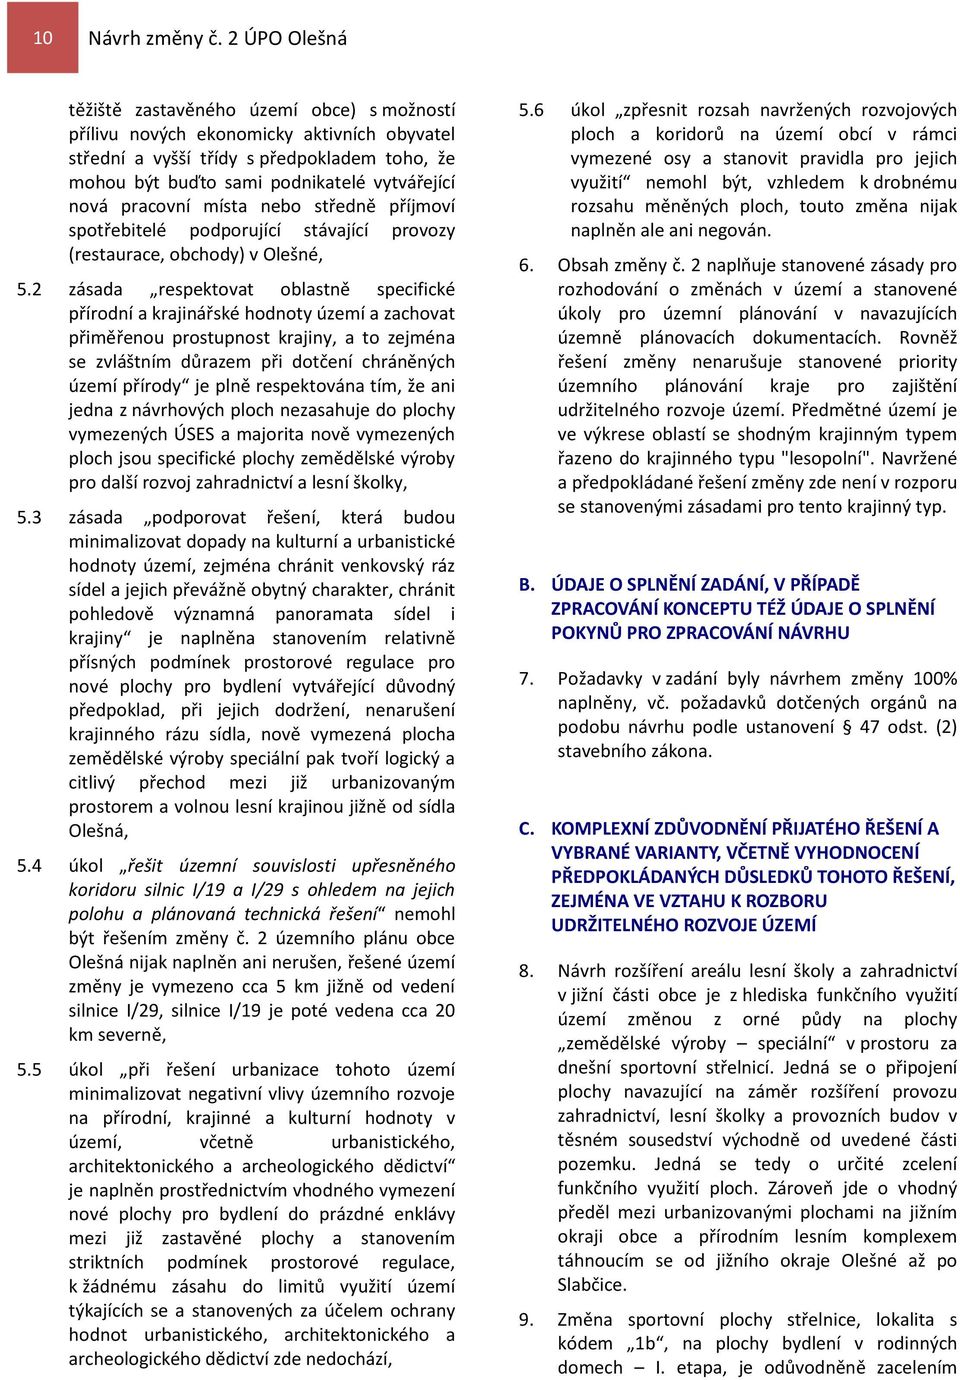 pracovní místa nebo středně příjmoví spotřebitelé podporující stávající provozy (restaurace, obchody) v Olešné, 5.